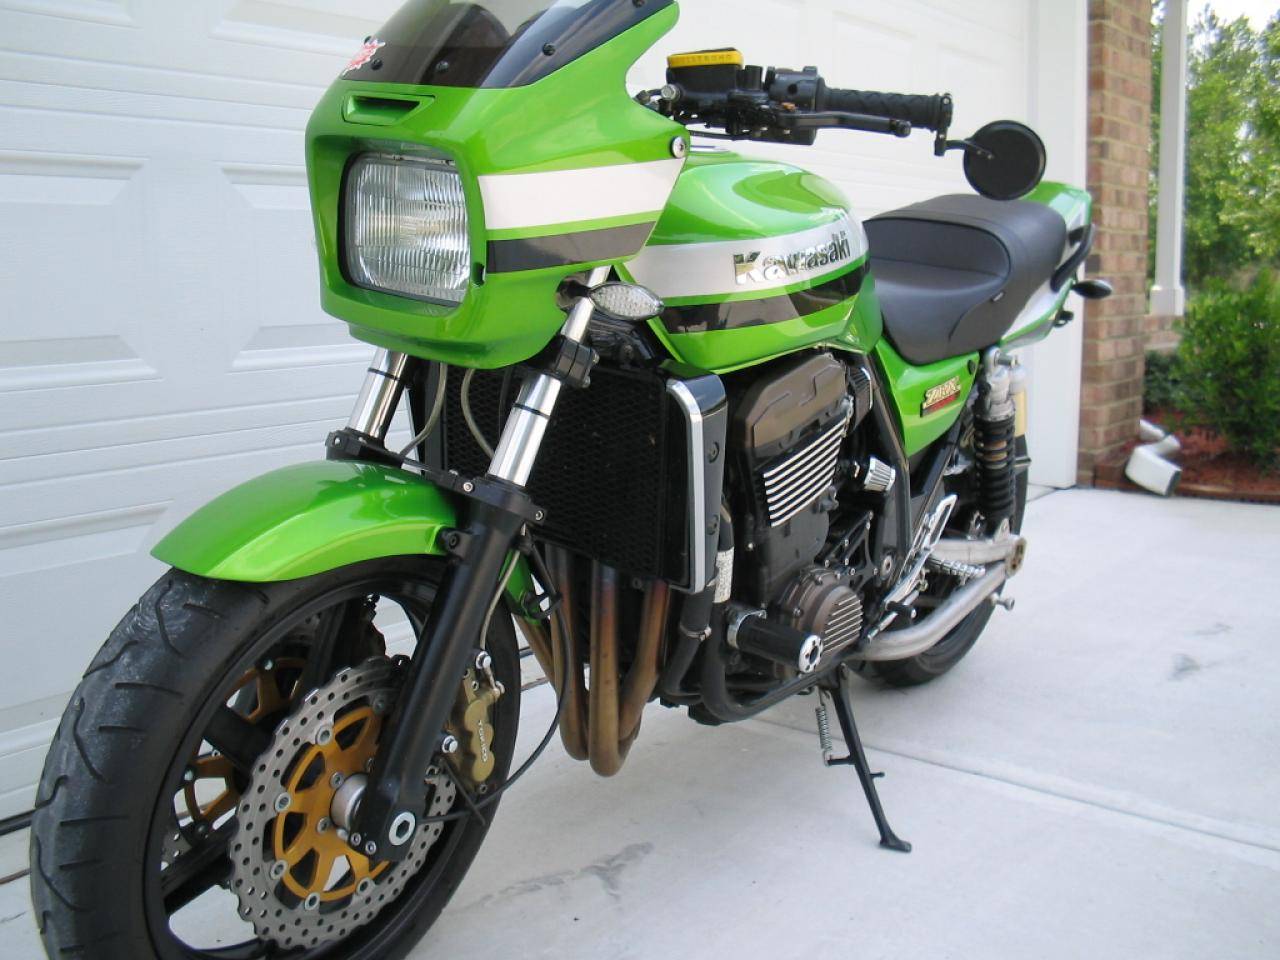 Мотоцикл  zrx 1200: технические характеристики, фото, видео